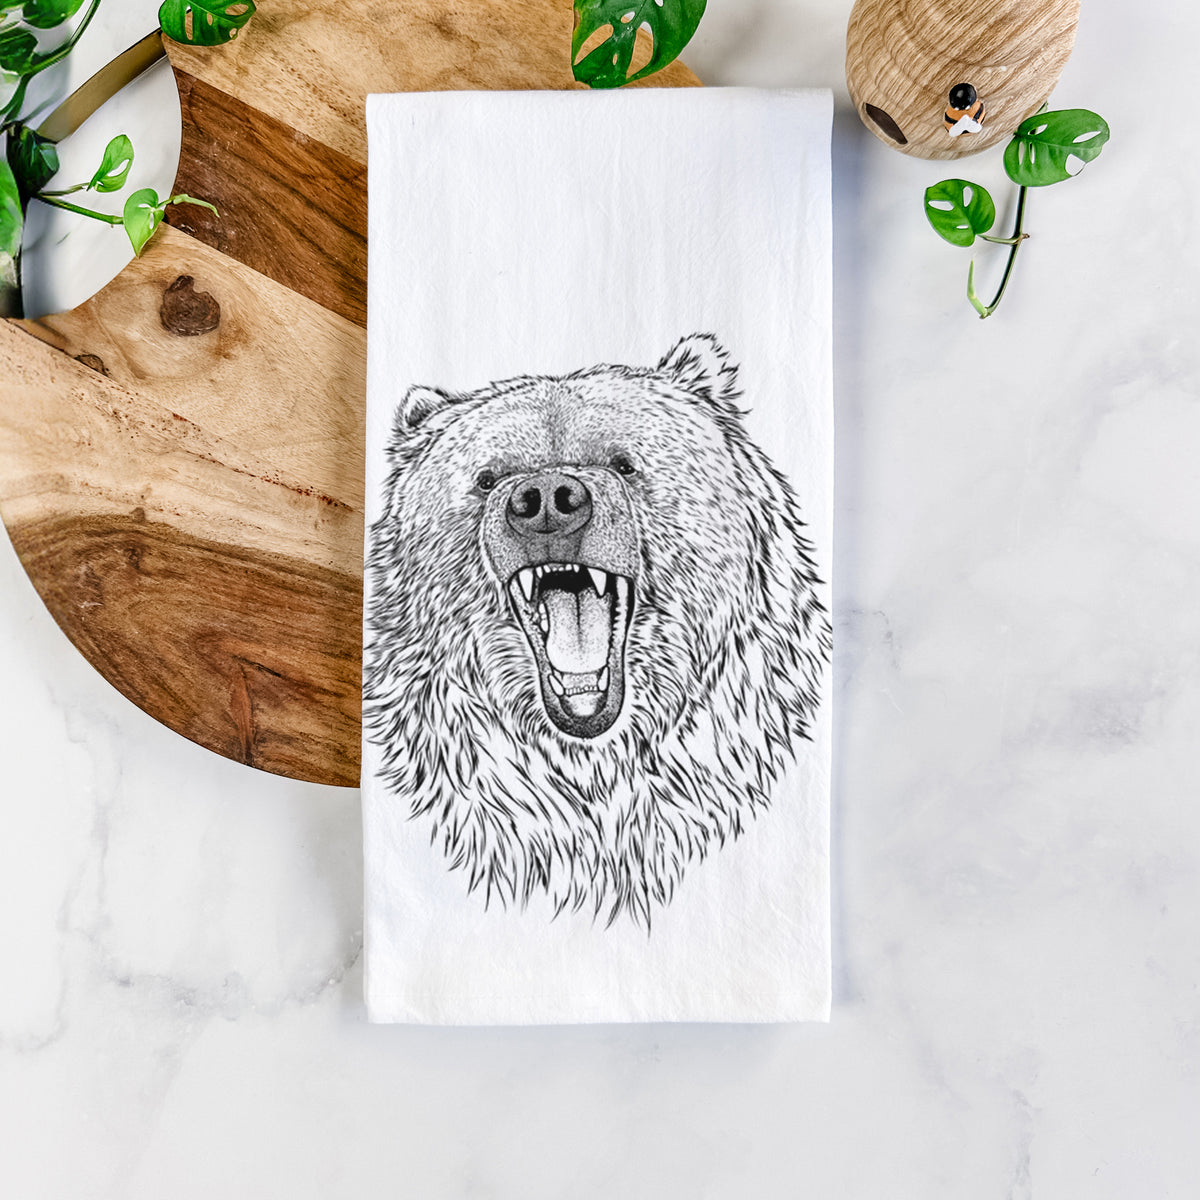 Ursus arctos - Kodiak Bear Tea Towel